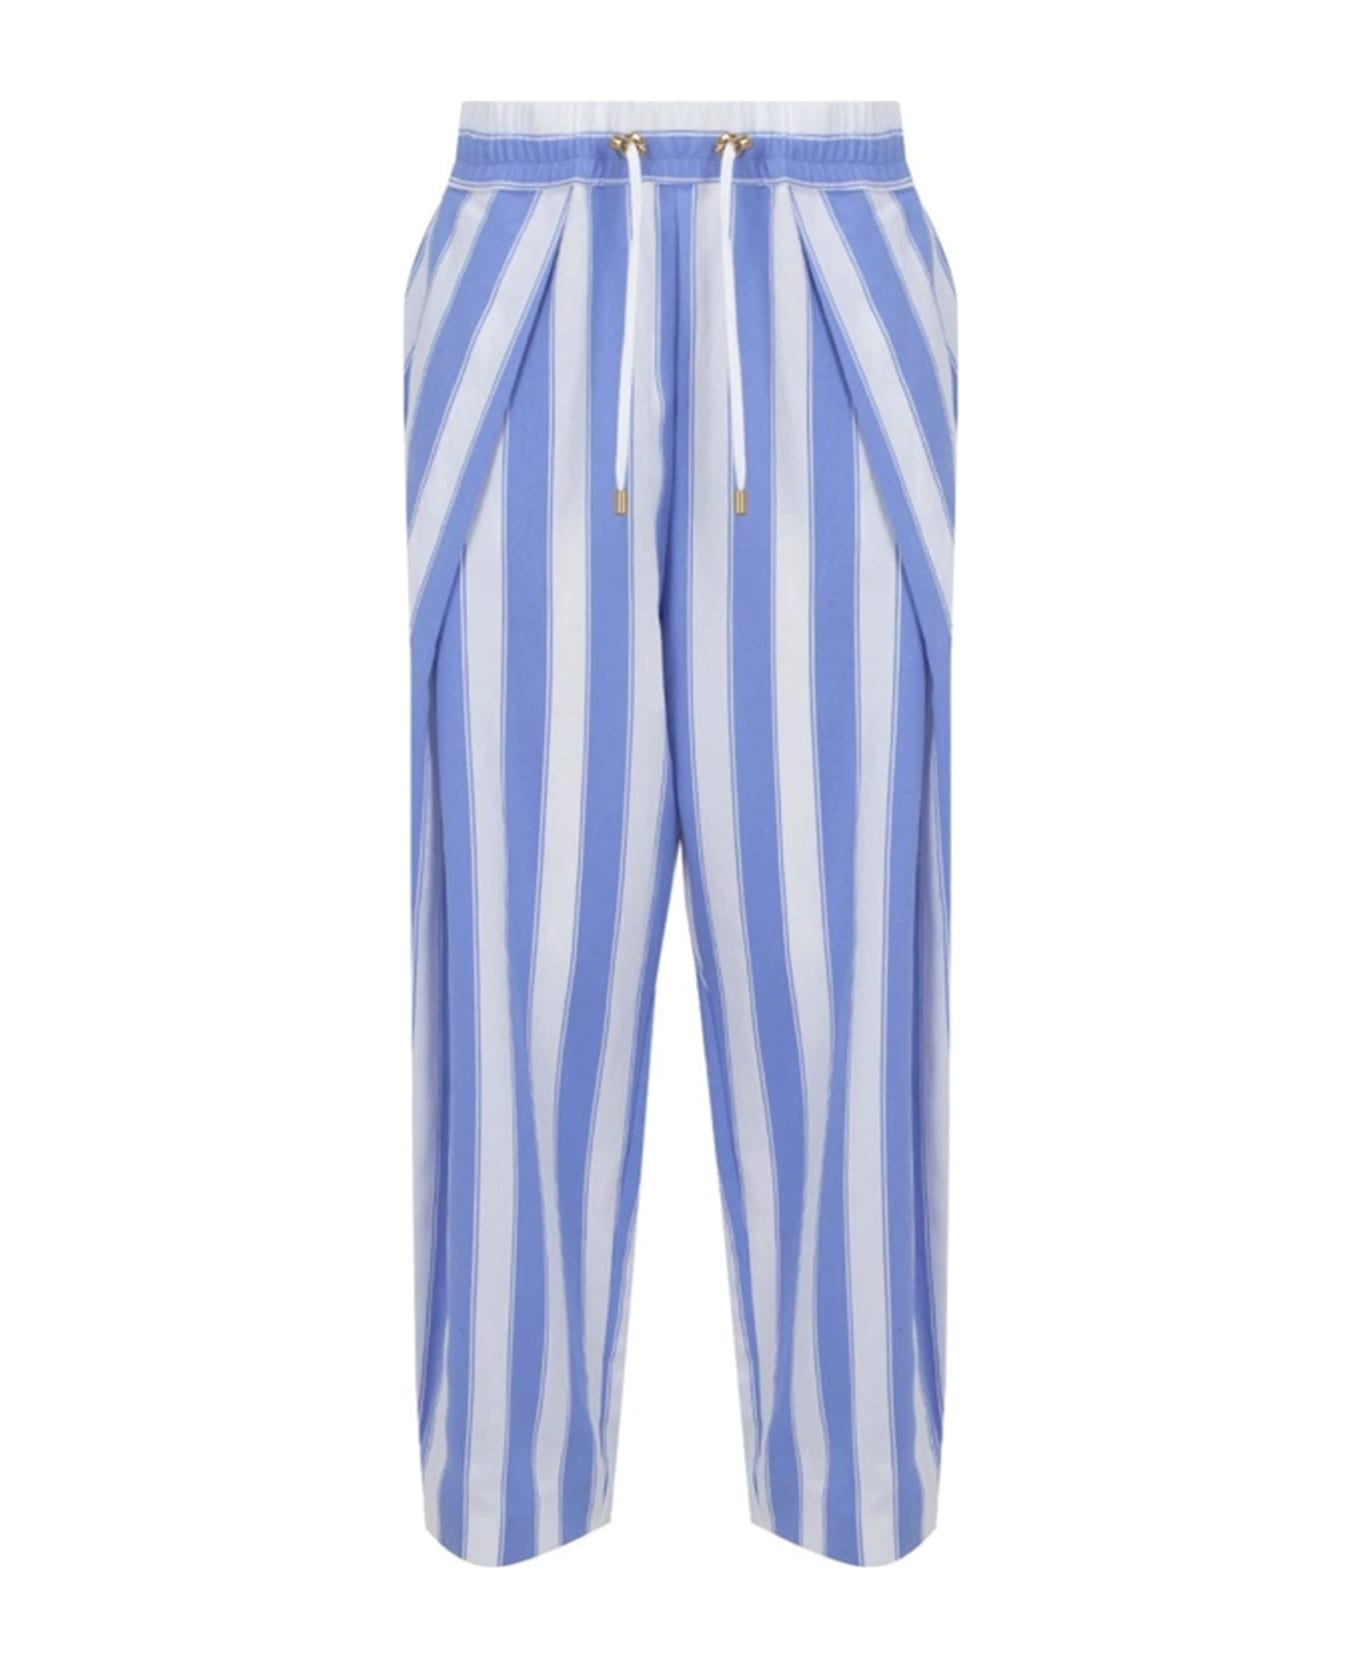 Balmain Striped Pants - Blue